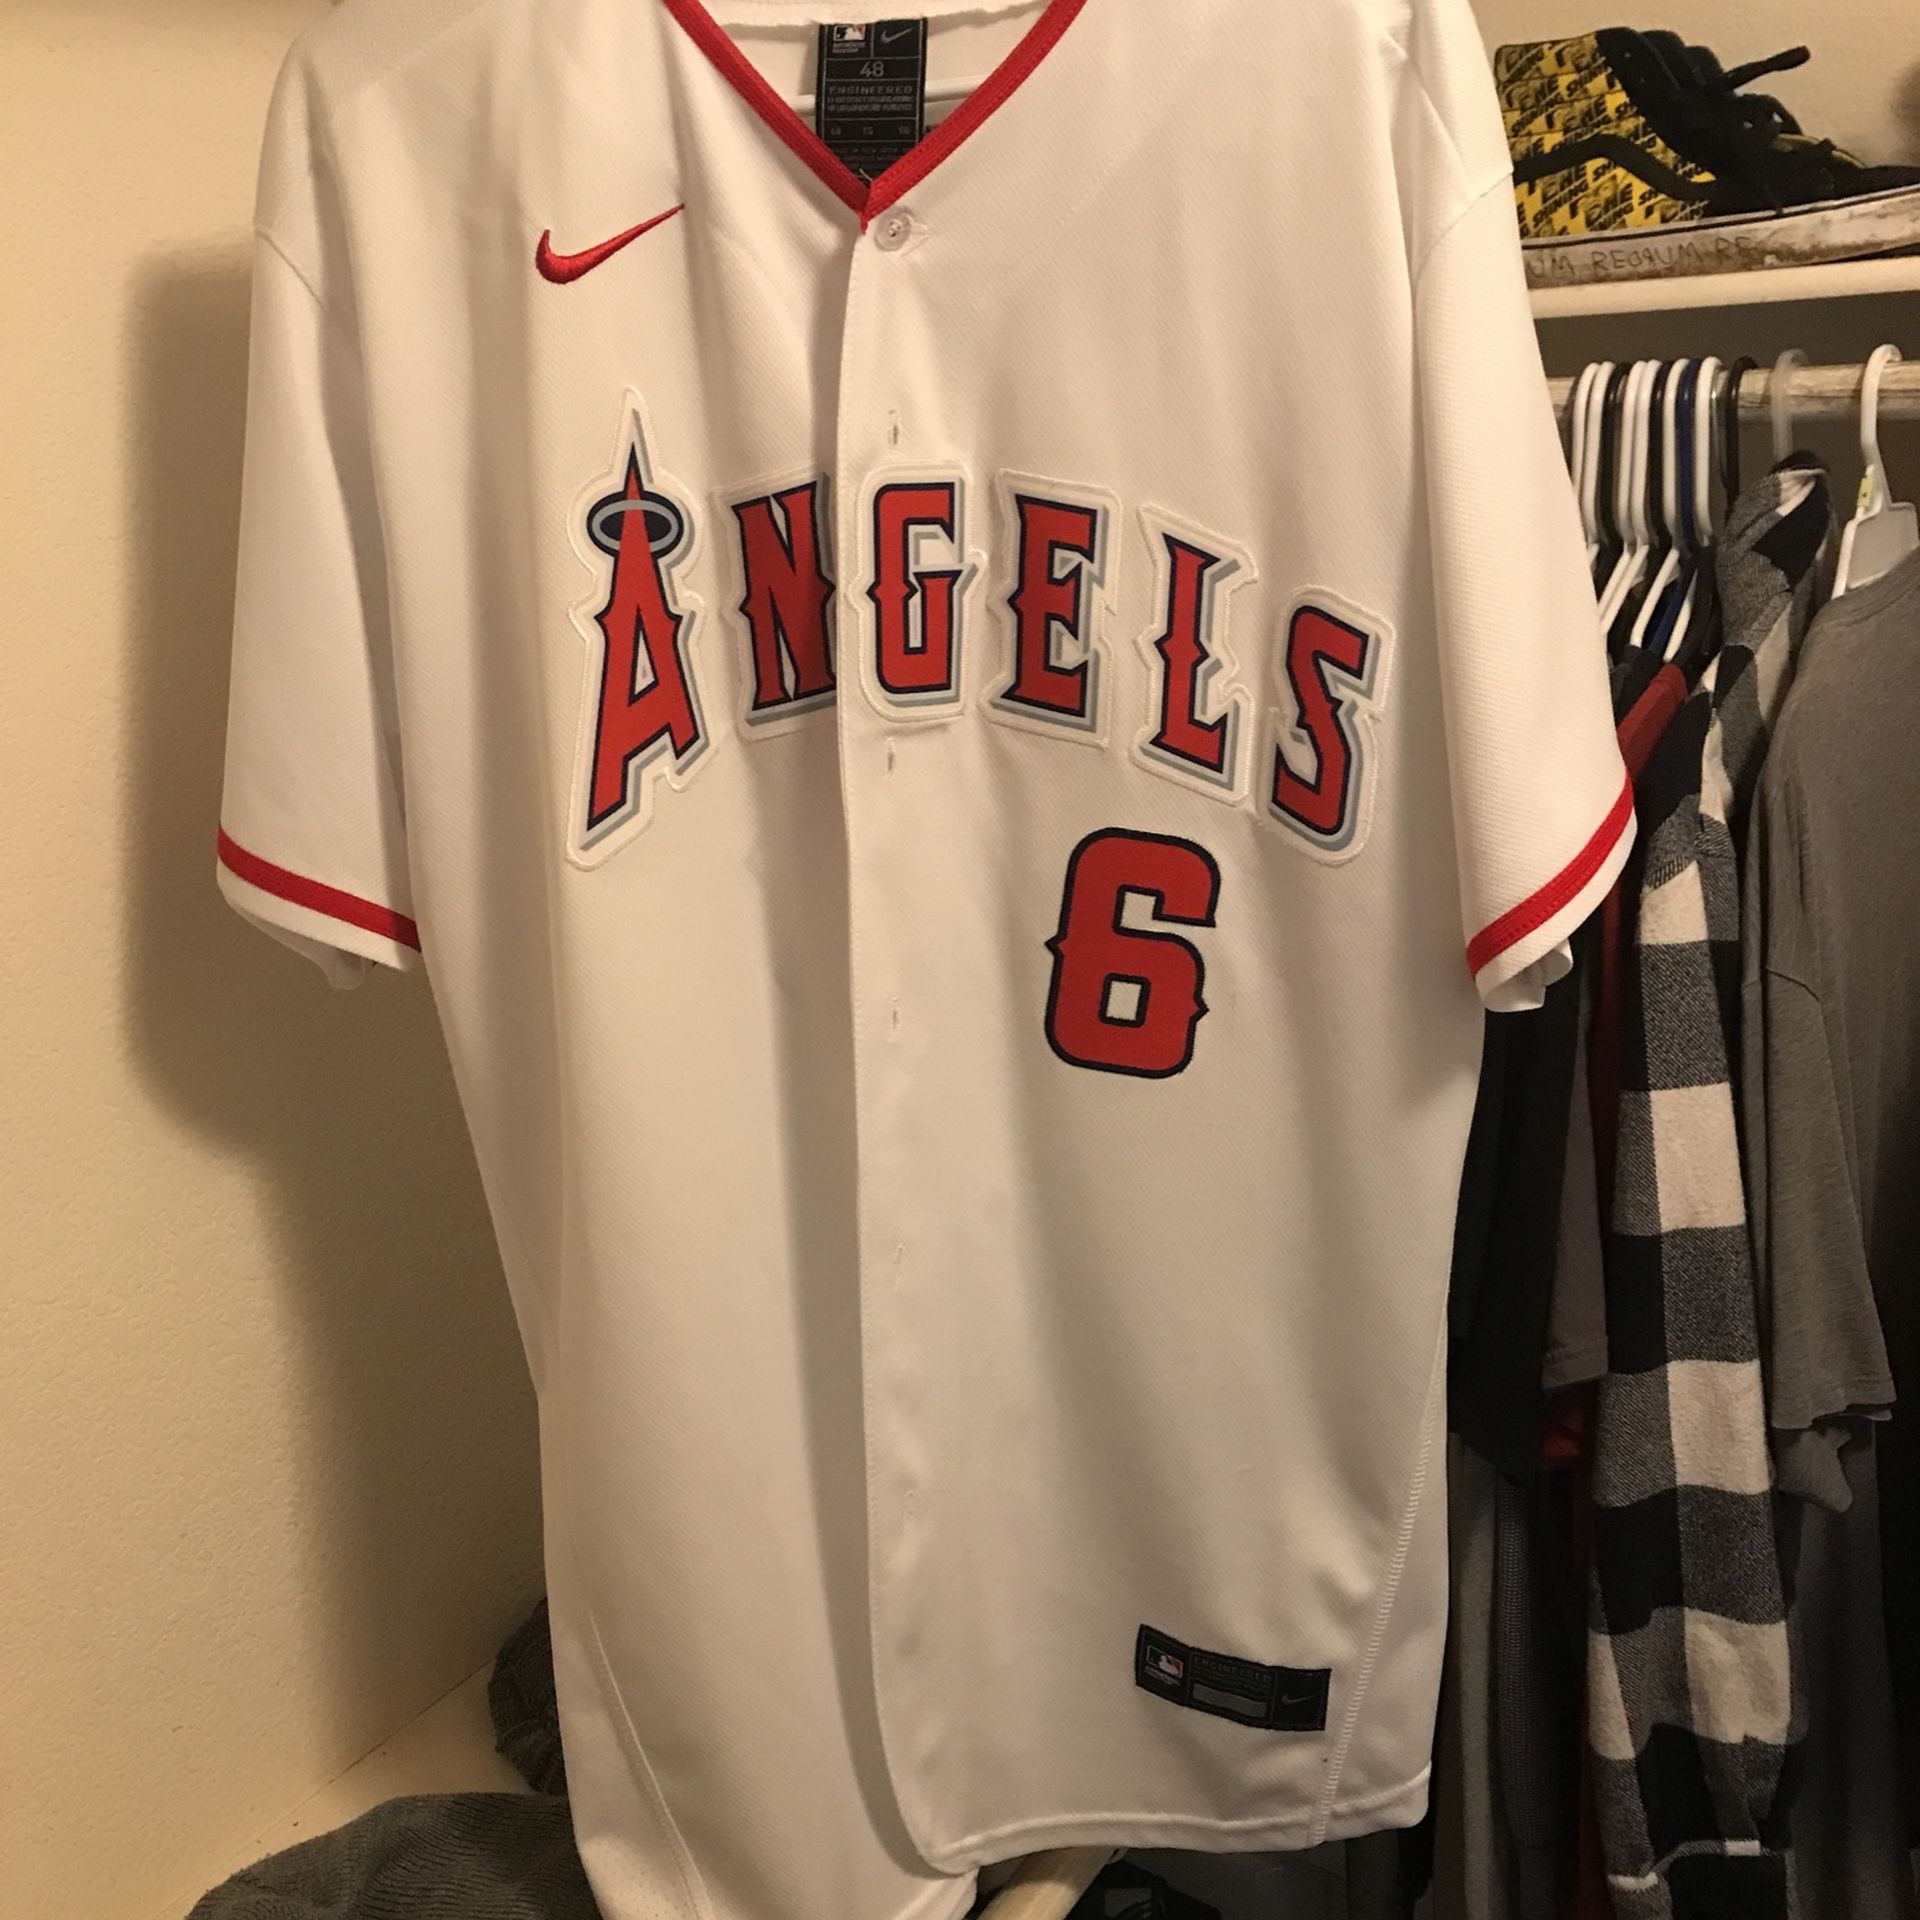 LA Angels Baseball Jersey for Sale in Riverside, CA - OfferUp